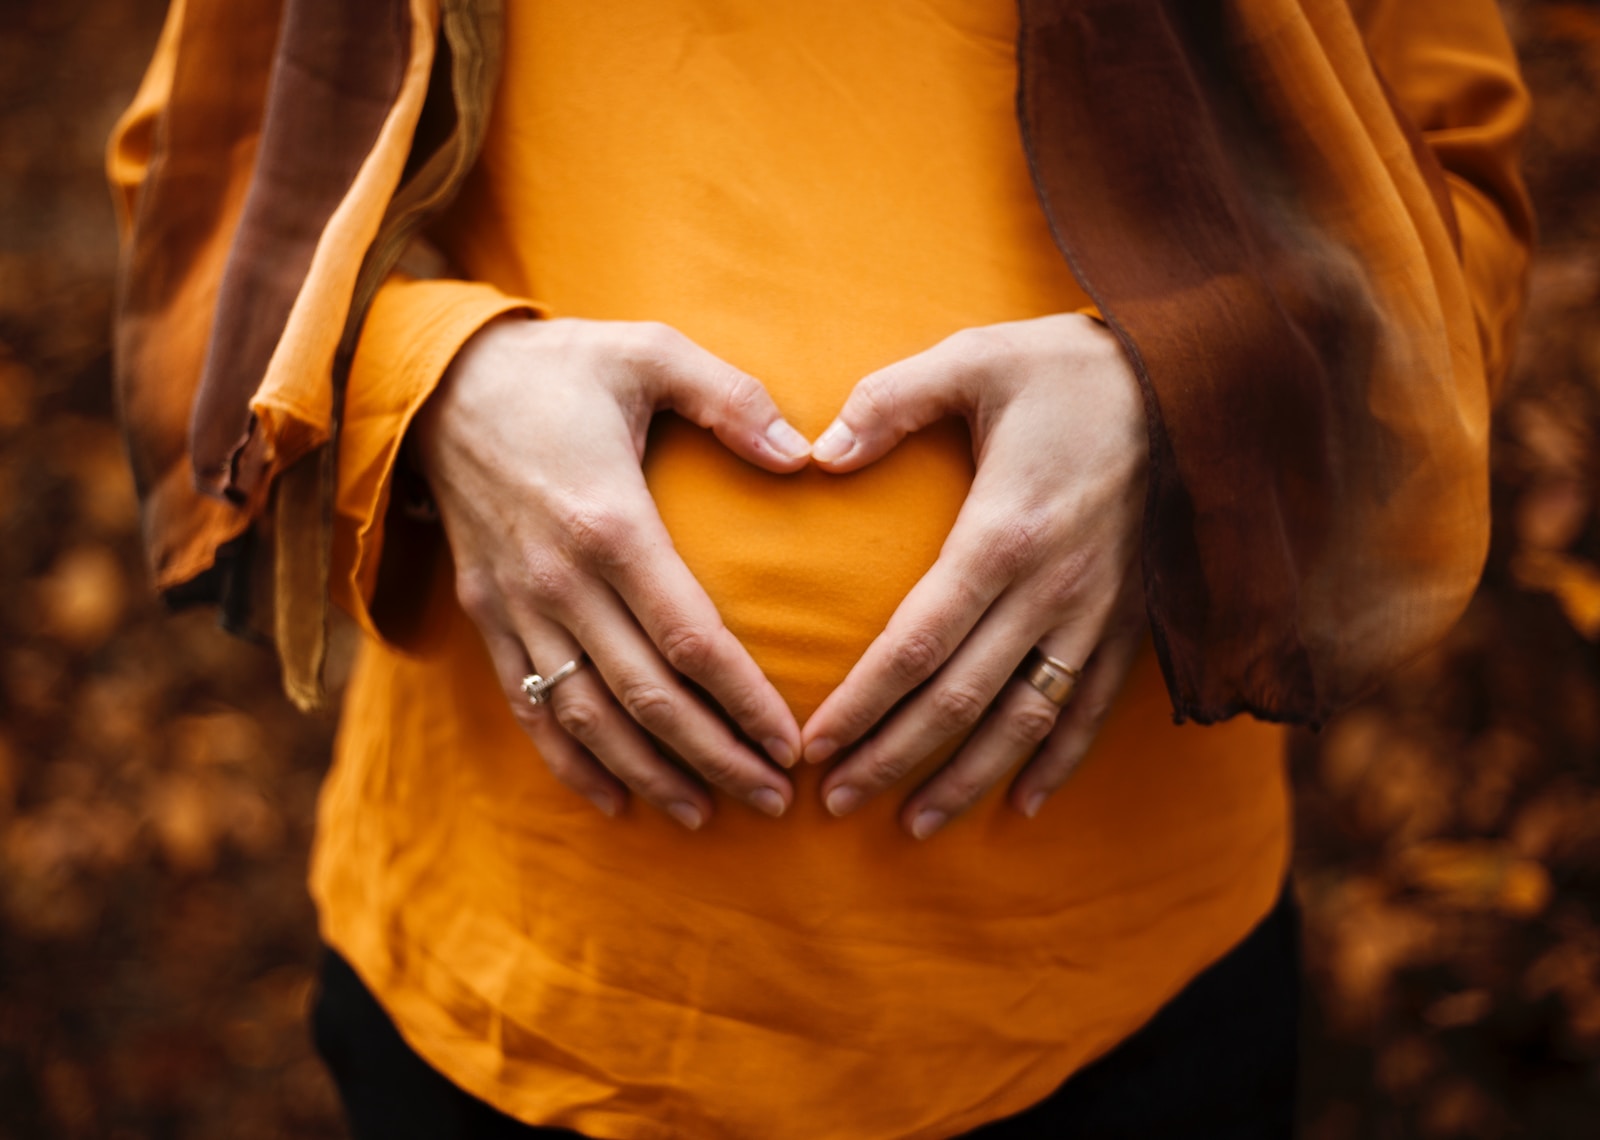 רשלנות רפואית בהריון – כל מה שחשוב לדעת